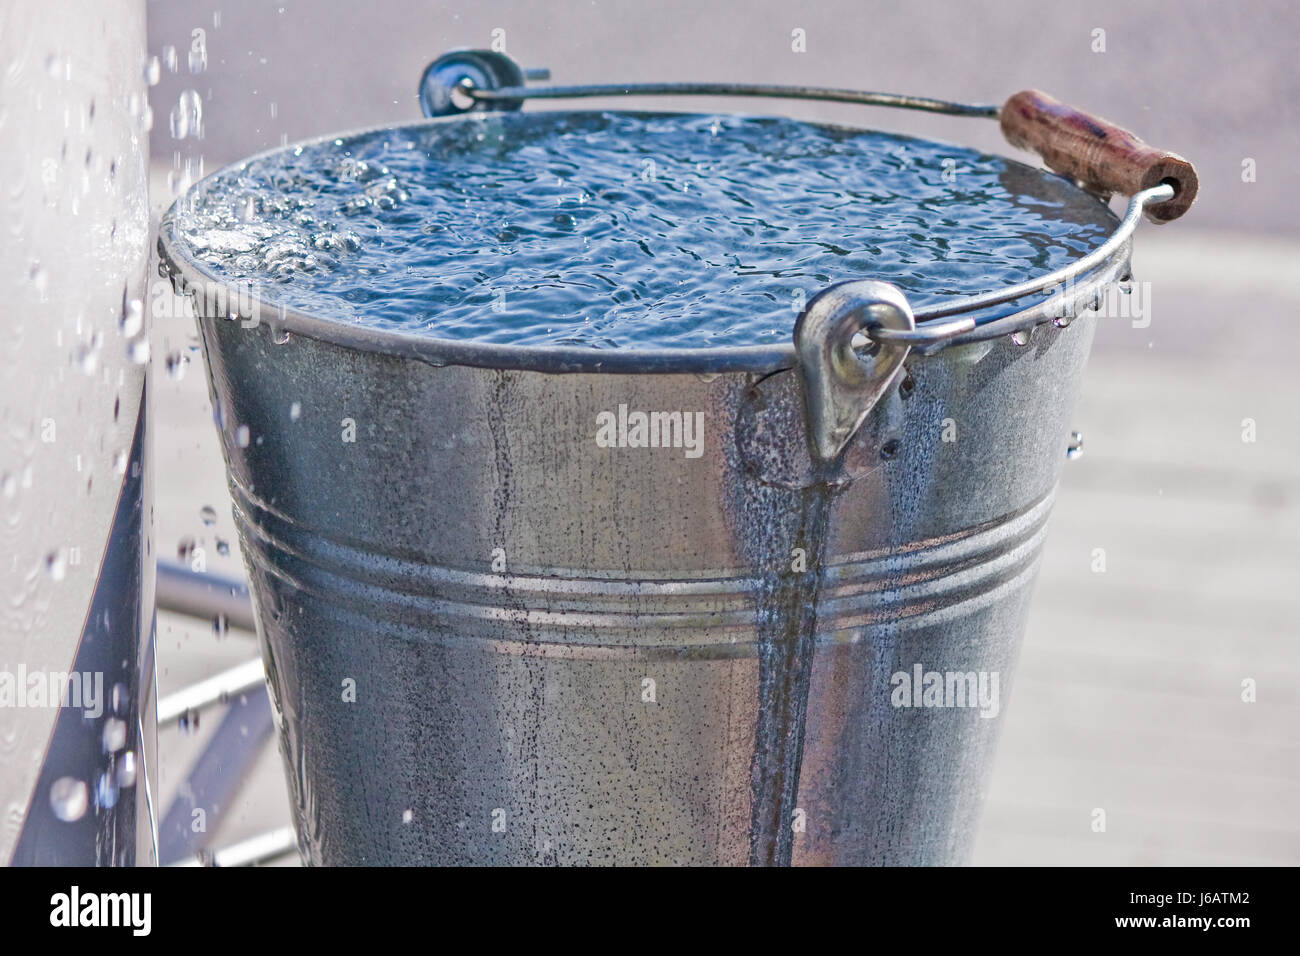 Erfrischung Eimer Trinkwasser Wasser voll Überschusswasser fallen  Wassertropfen drop Stockfotografie - Alamy